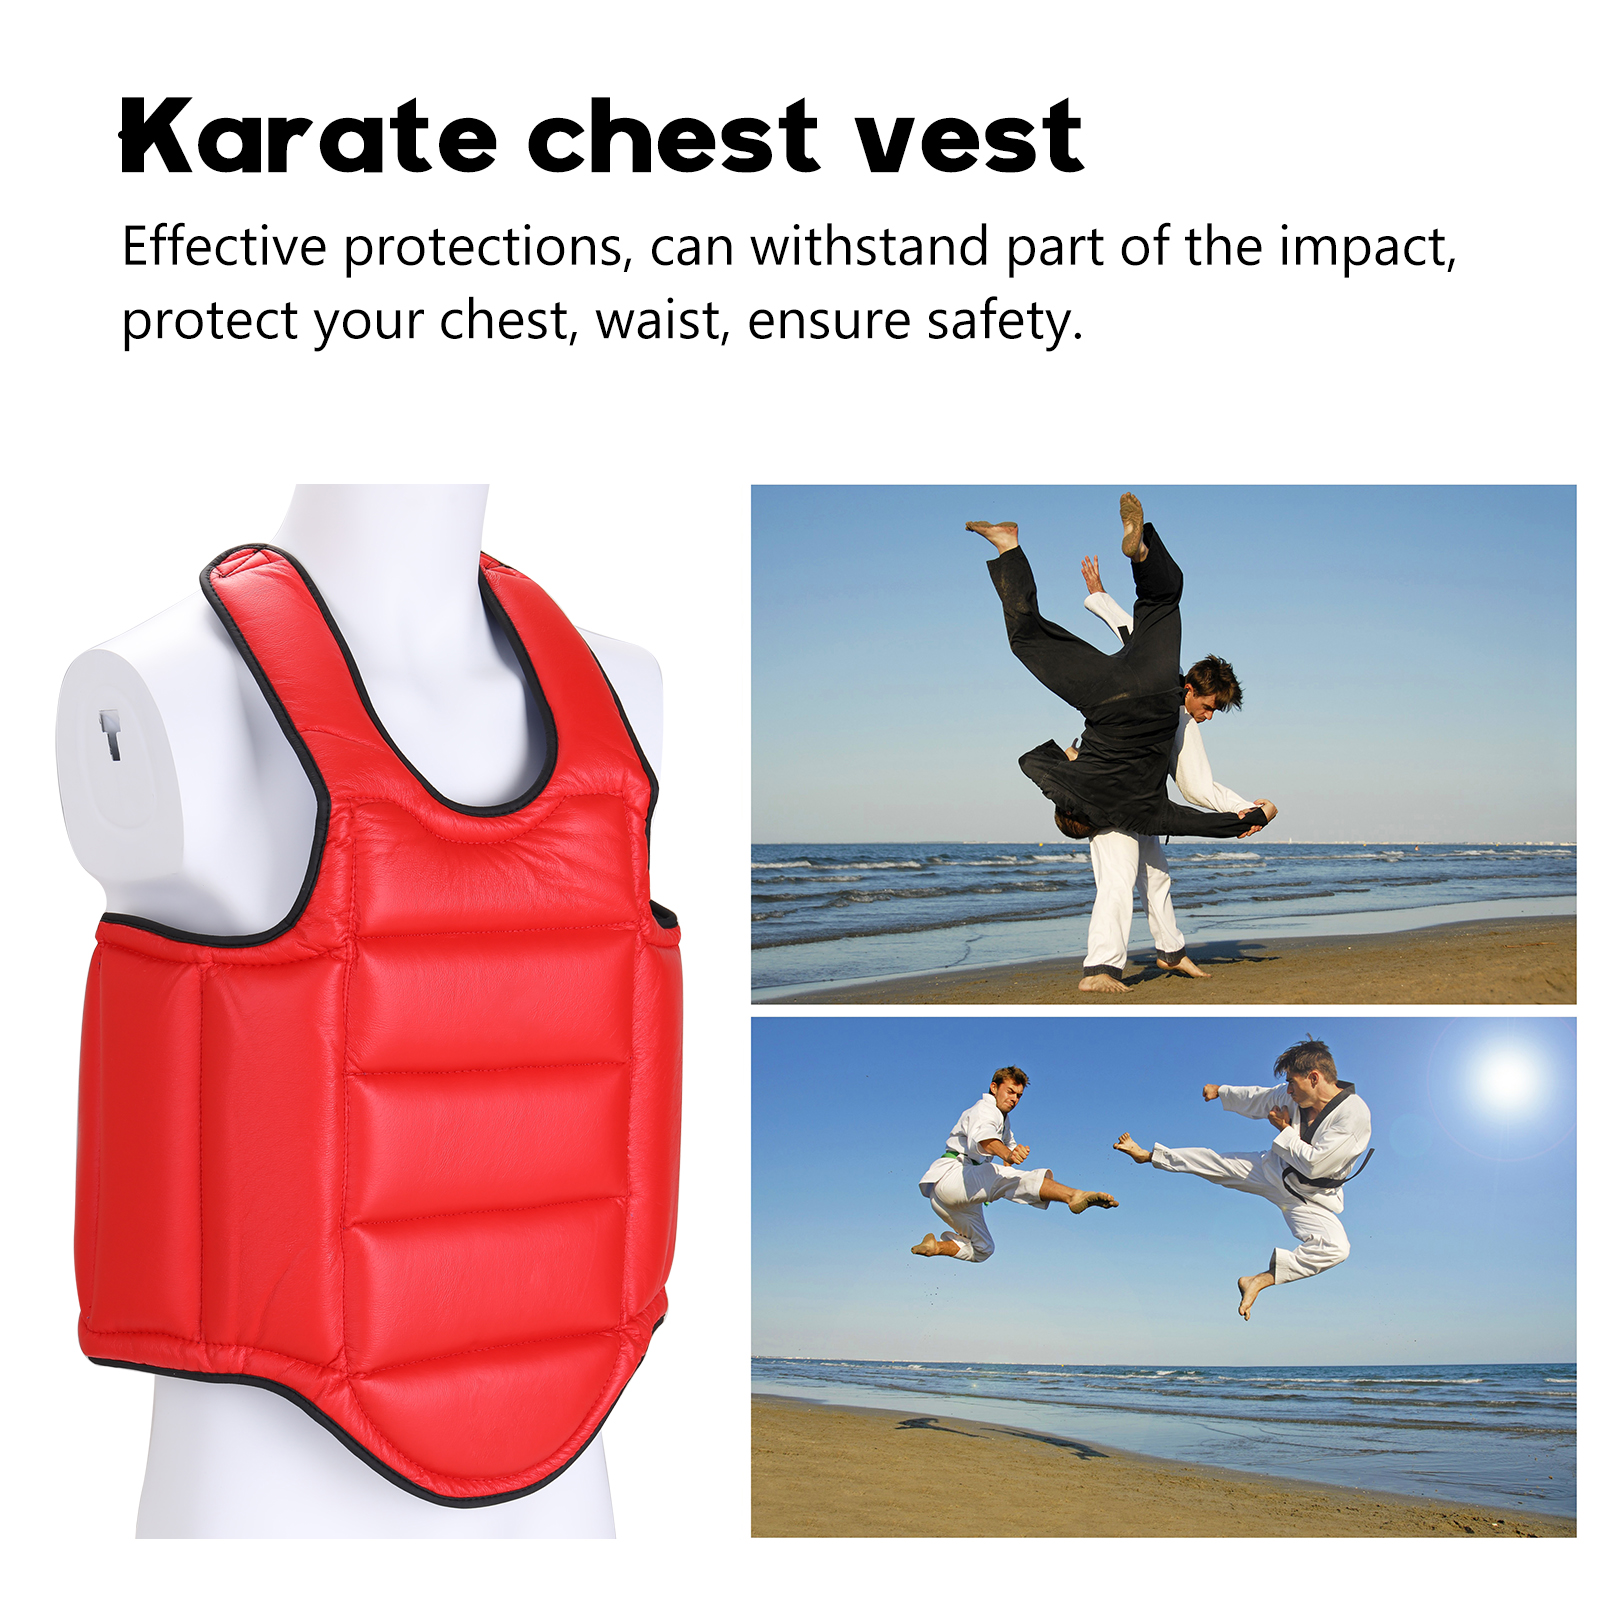 Áo giáp cho người học võ karate, taekwondo giúp bảo vệ ngực